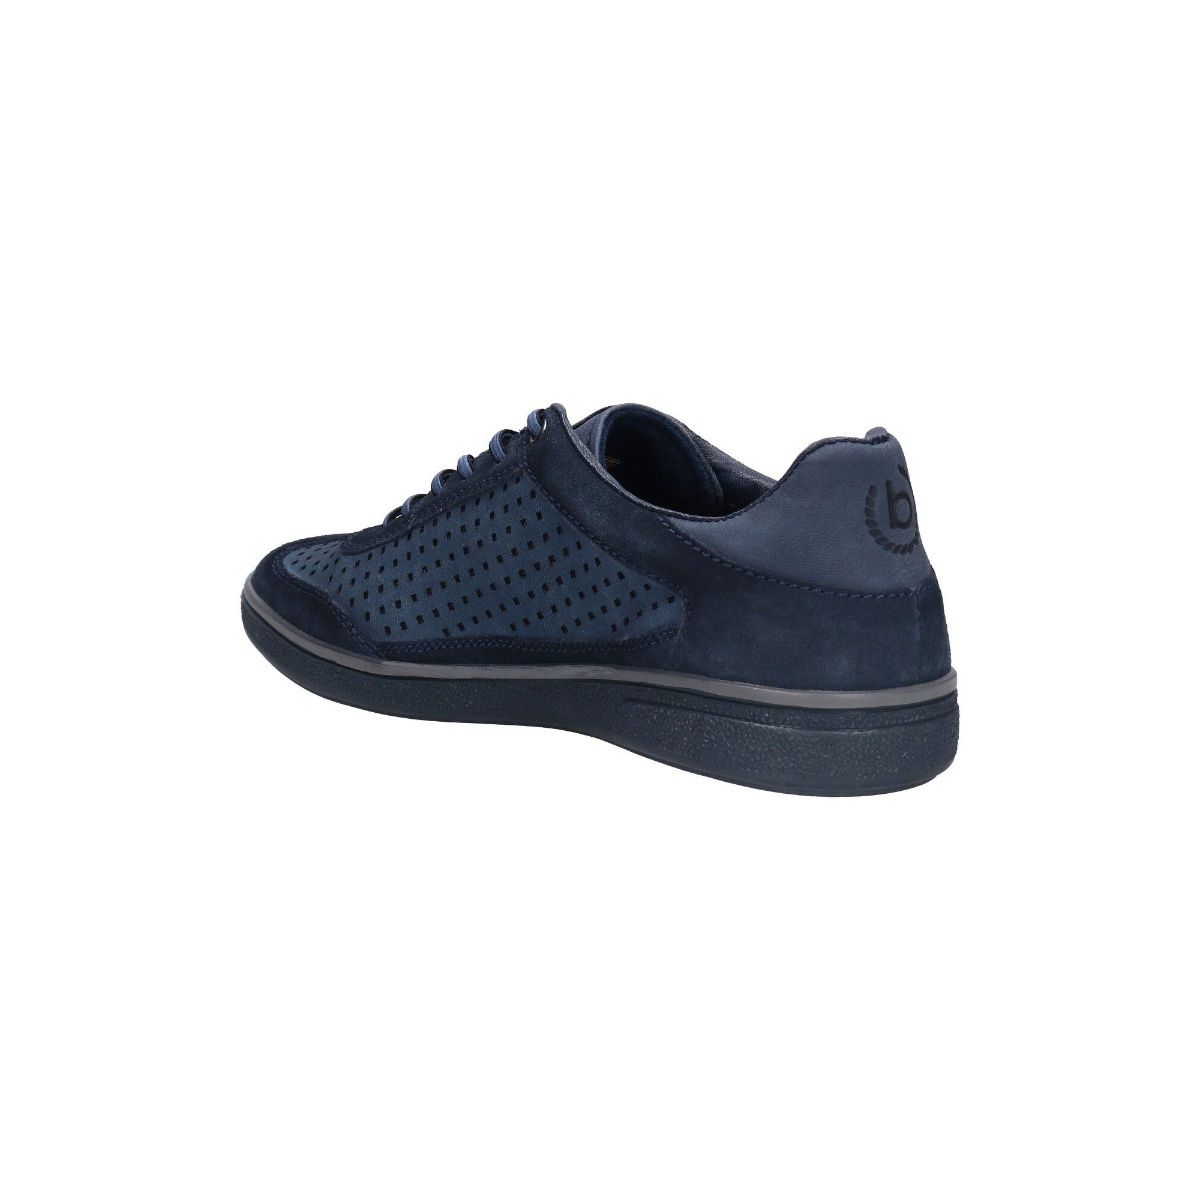 Buy Mast & Harbour Men Navy Solid Regular Sneakers at Amazon.in